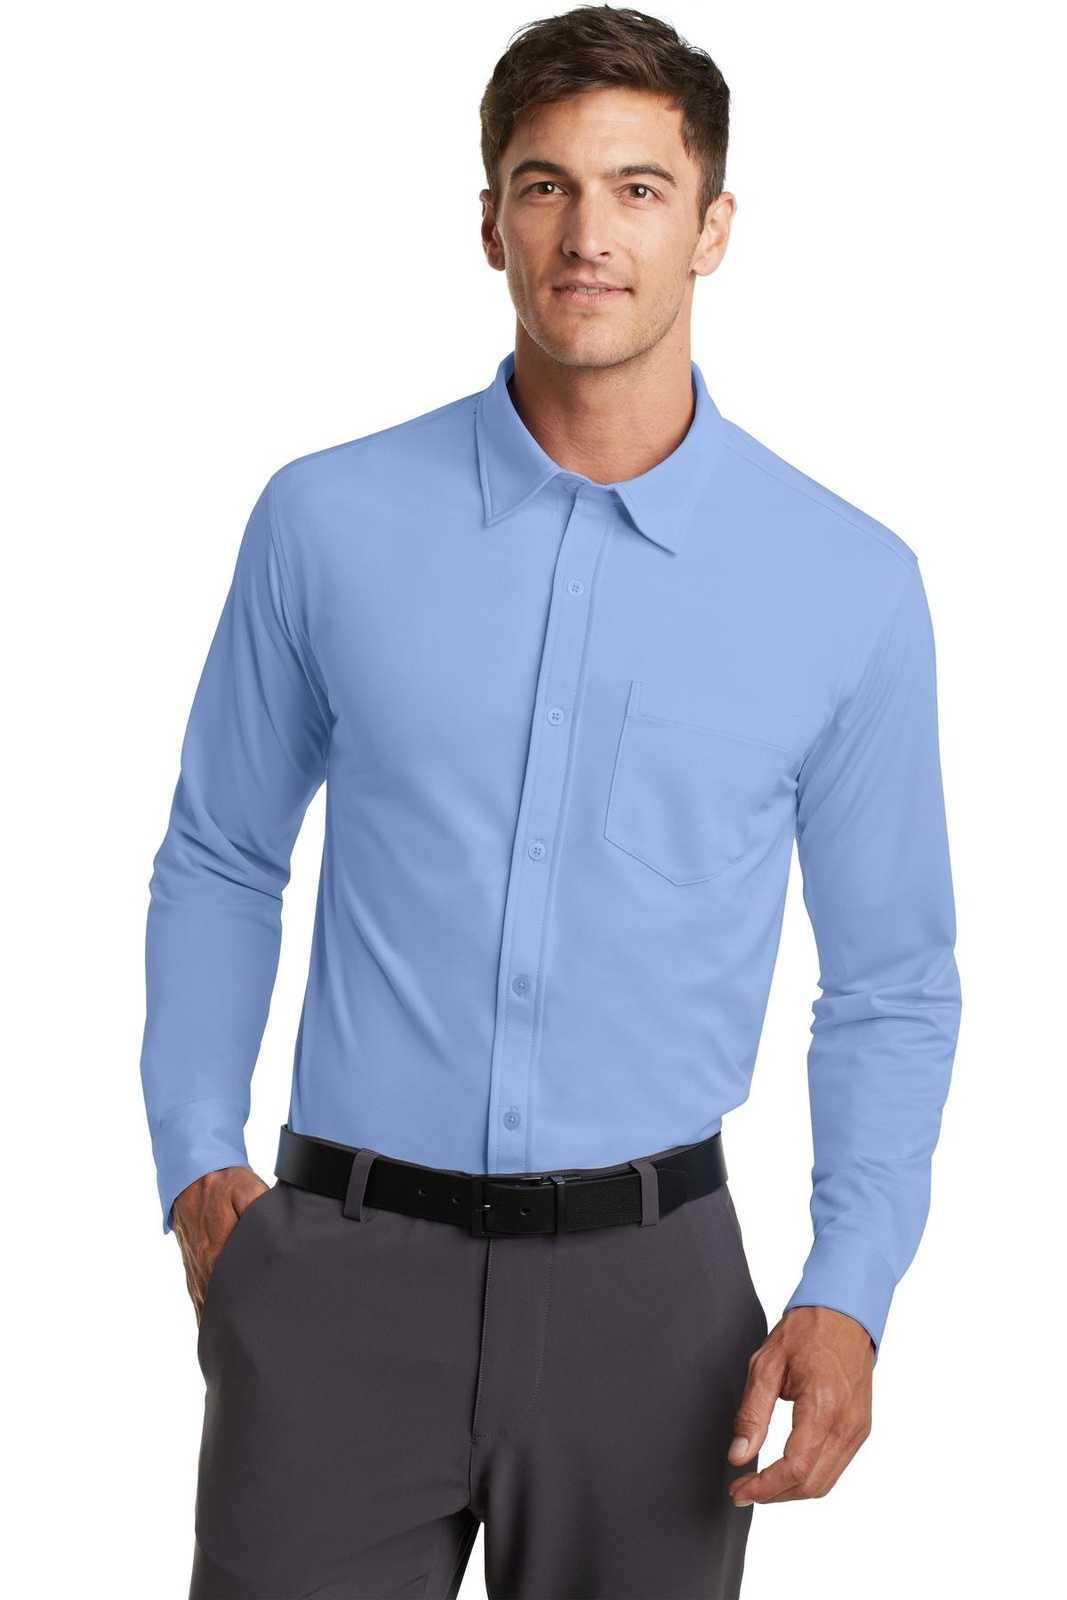 Port Authority K570 Dimension Knit Dress Shirt - Dress Shirt Blue - HIT a Double - 1